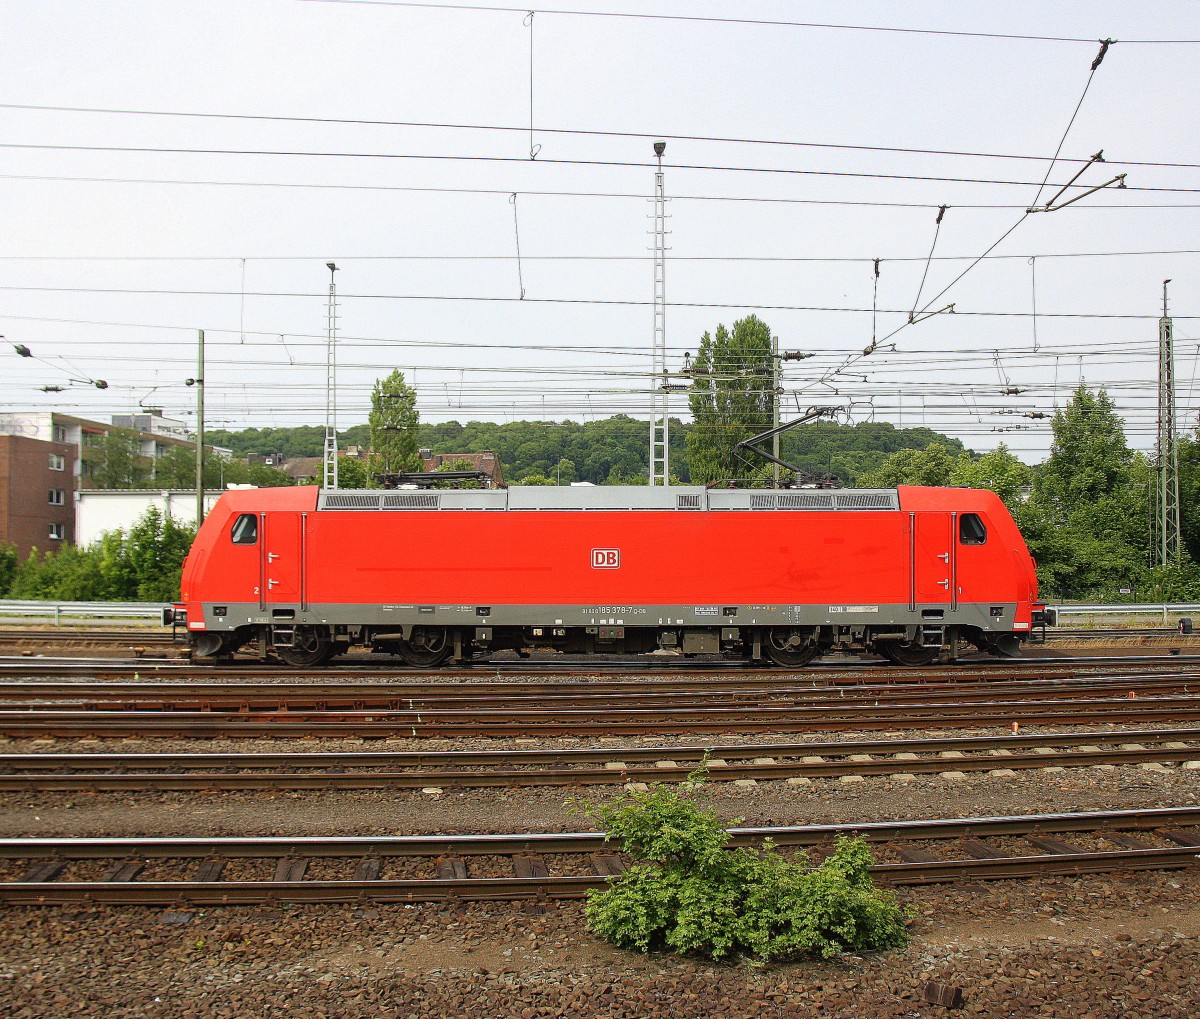 185 378-7 DB rangiert in Aachen-West.
Aufgenommen vom Bahnsteig in Aachen-West. 
Bei Sonne und Wolken am Nachmittag vom 26.6.2015.